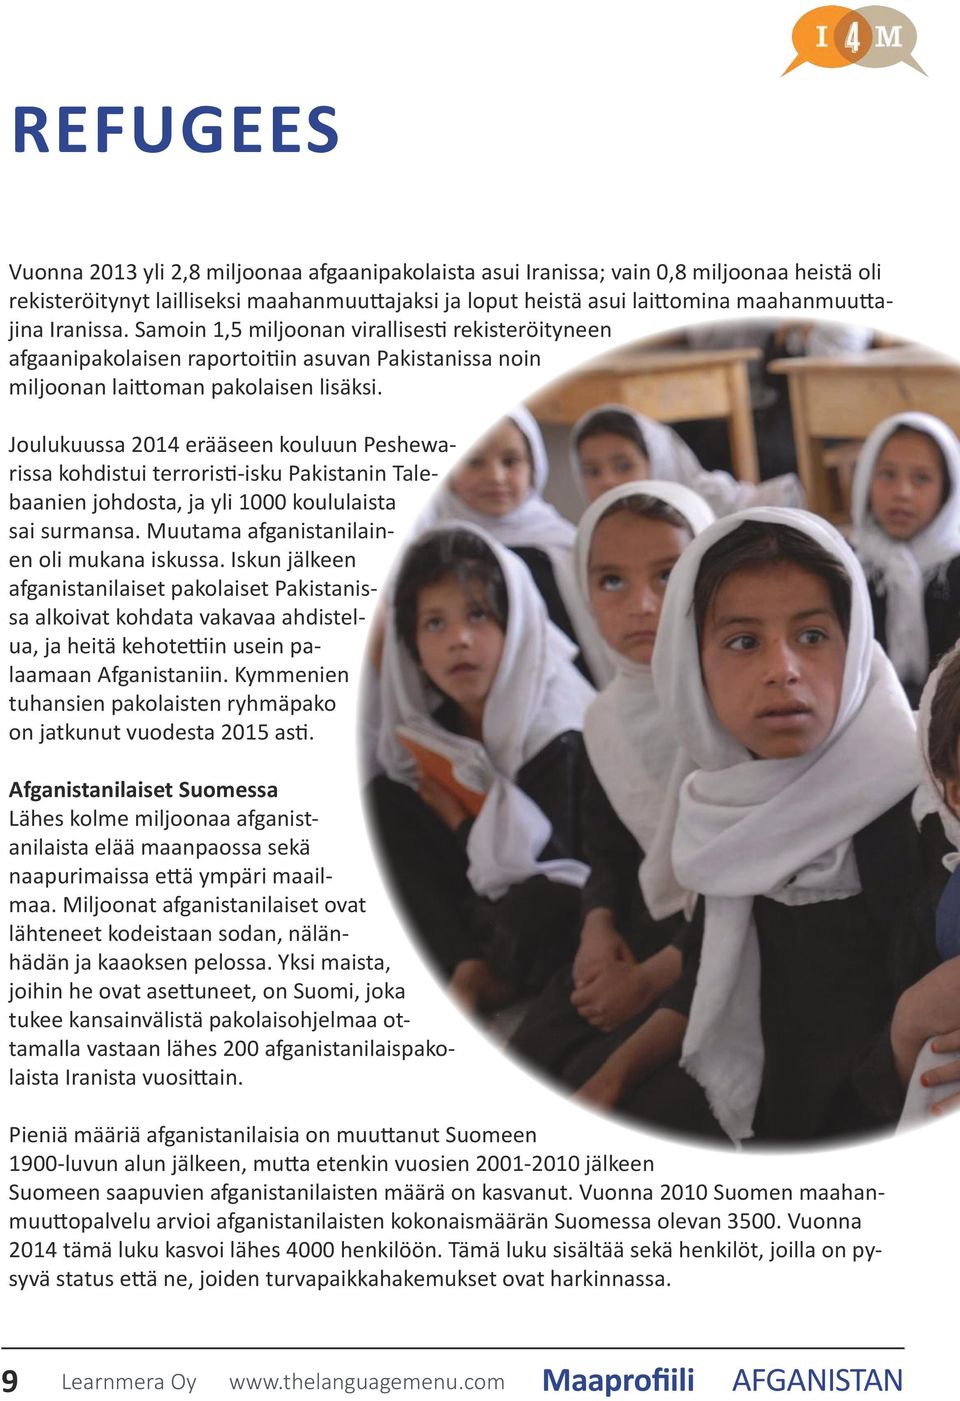 Joulukuussa 2014 erääseen kouluun Peshewarissa kohdistui terroristi-isku Pakistanin Talebaanien johdosta, ja yli 1000 koululaista sai surmansa. Muutama afganistanilainen oli mukana iskussa.